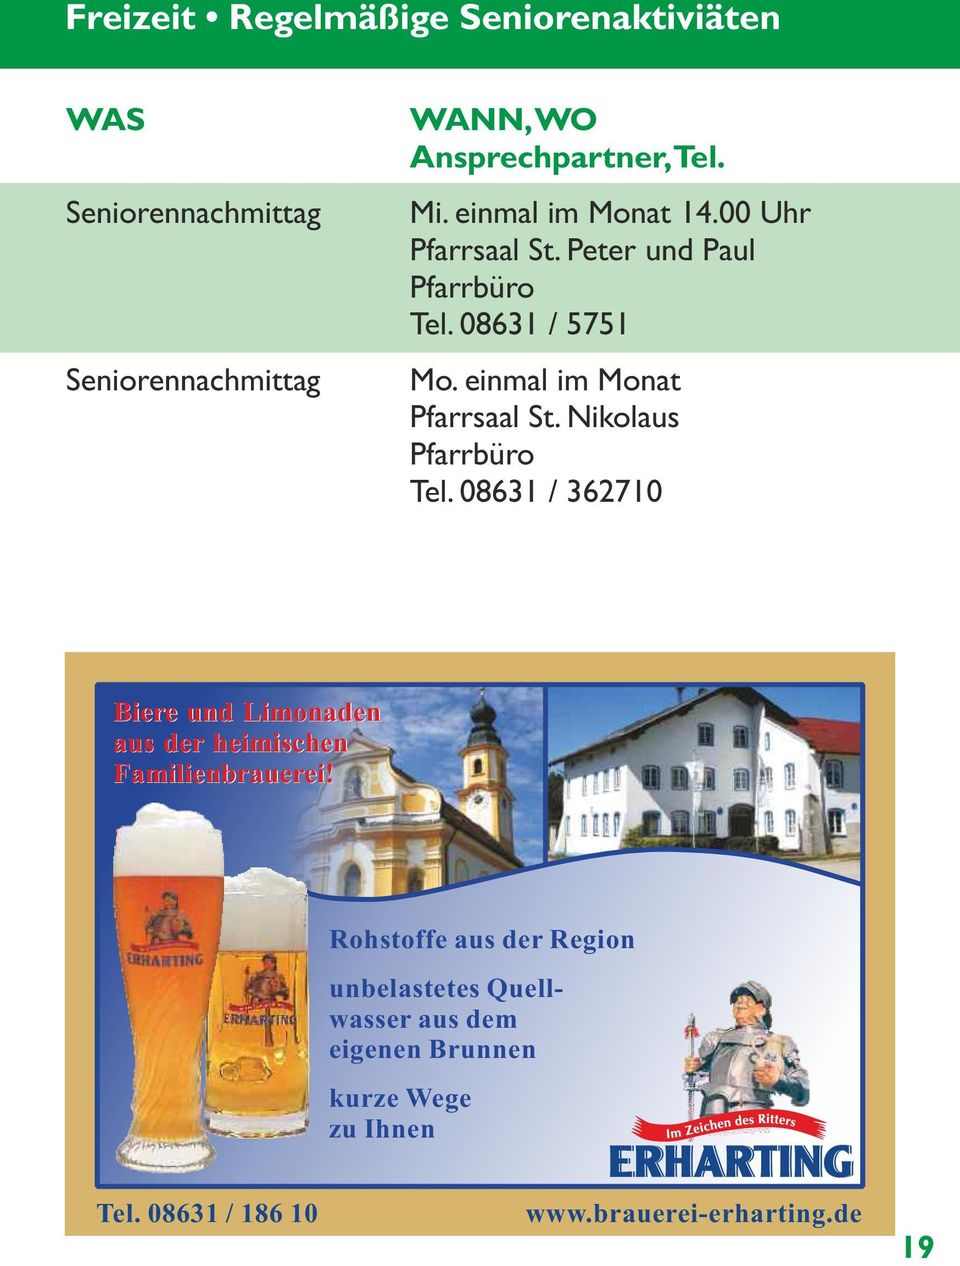 Nikolaus Pfarrbüro Tel. 08631 / 362710 Biere und Limonaden aus der heimischen Familienbrauerei!